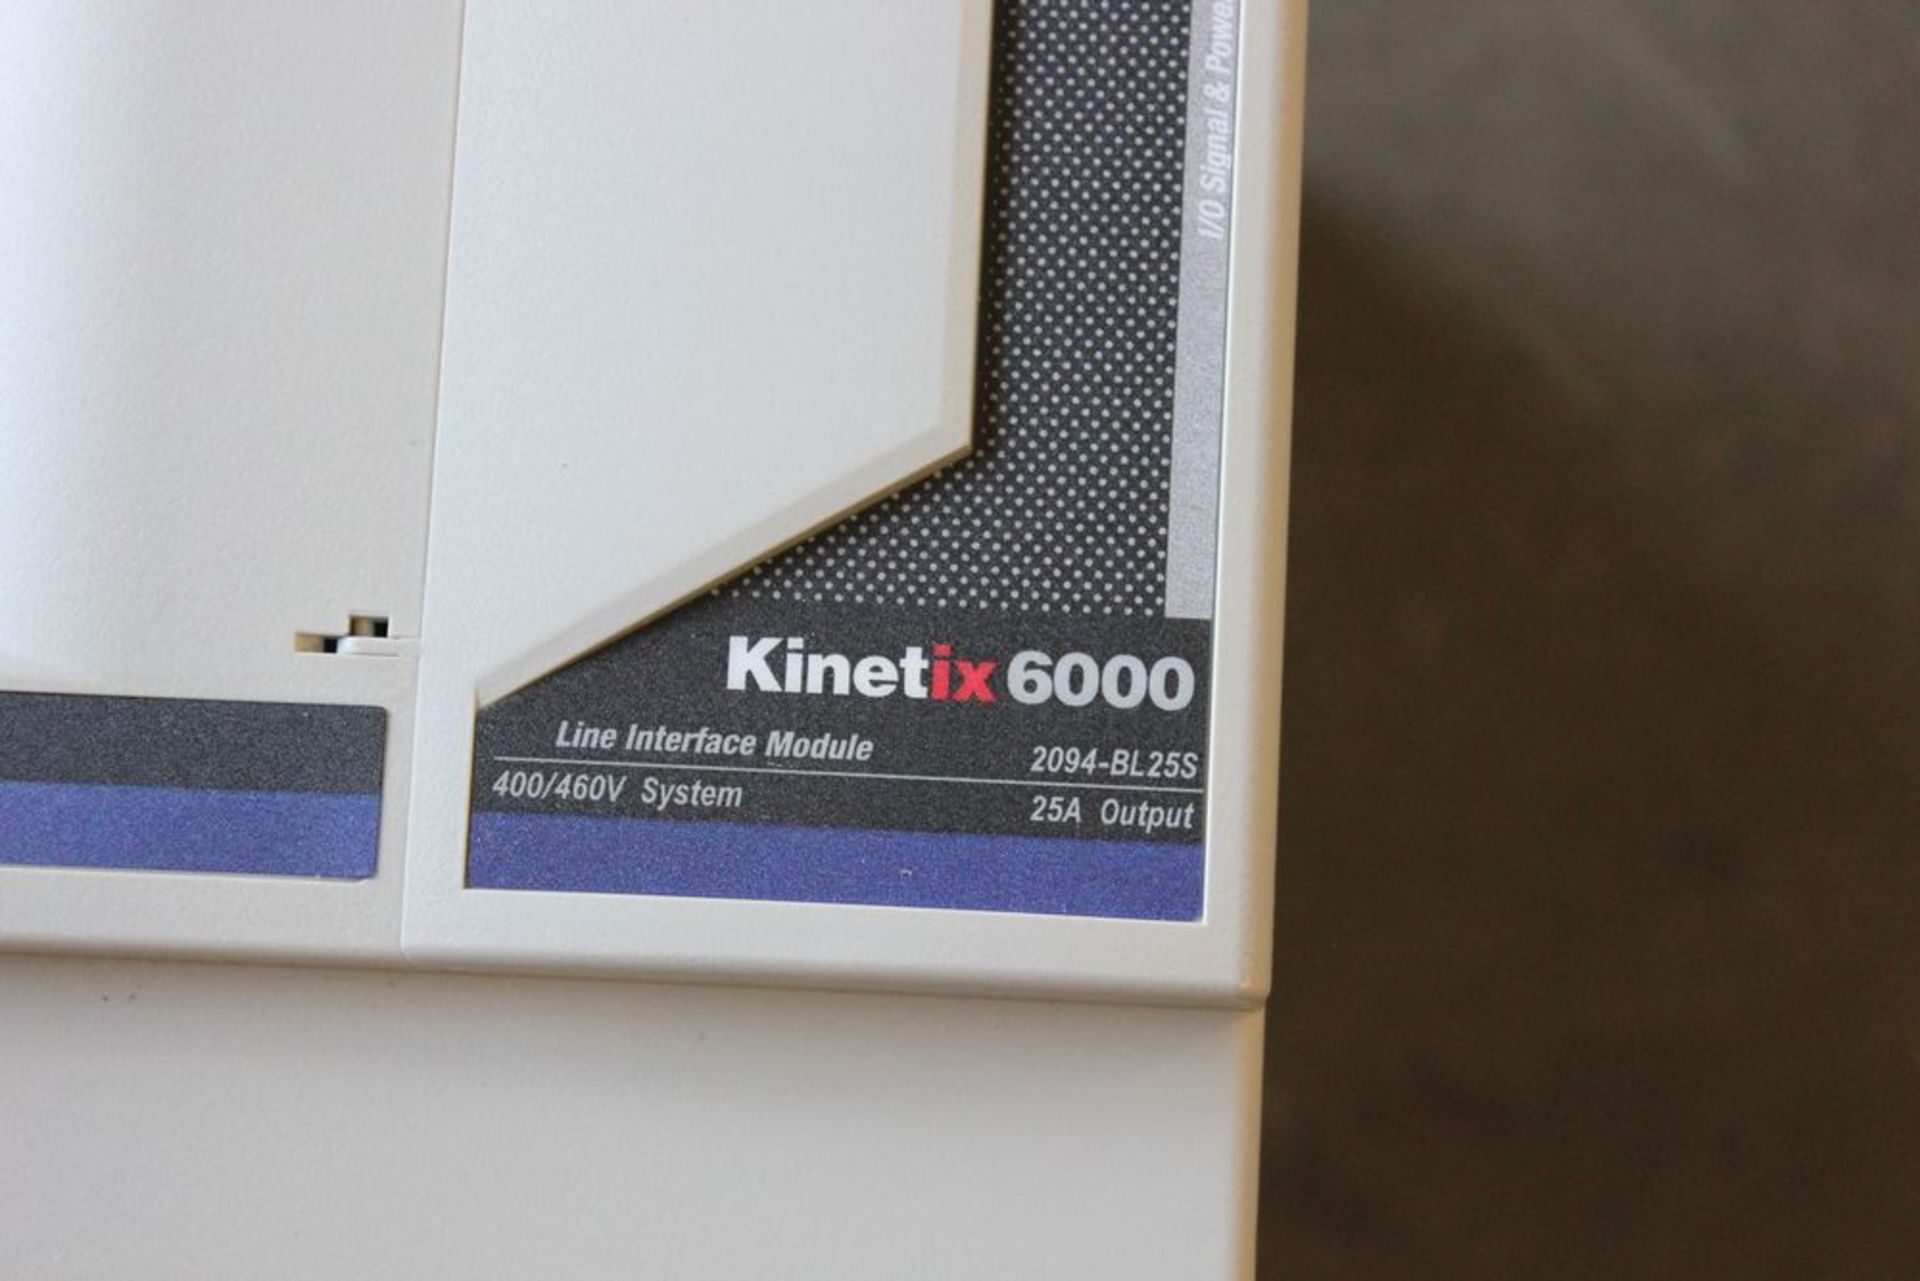 NEW ALLEN BRADLEY KINETIX 6000 LINE INTERFACE MODULE - Image 8 of 12